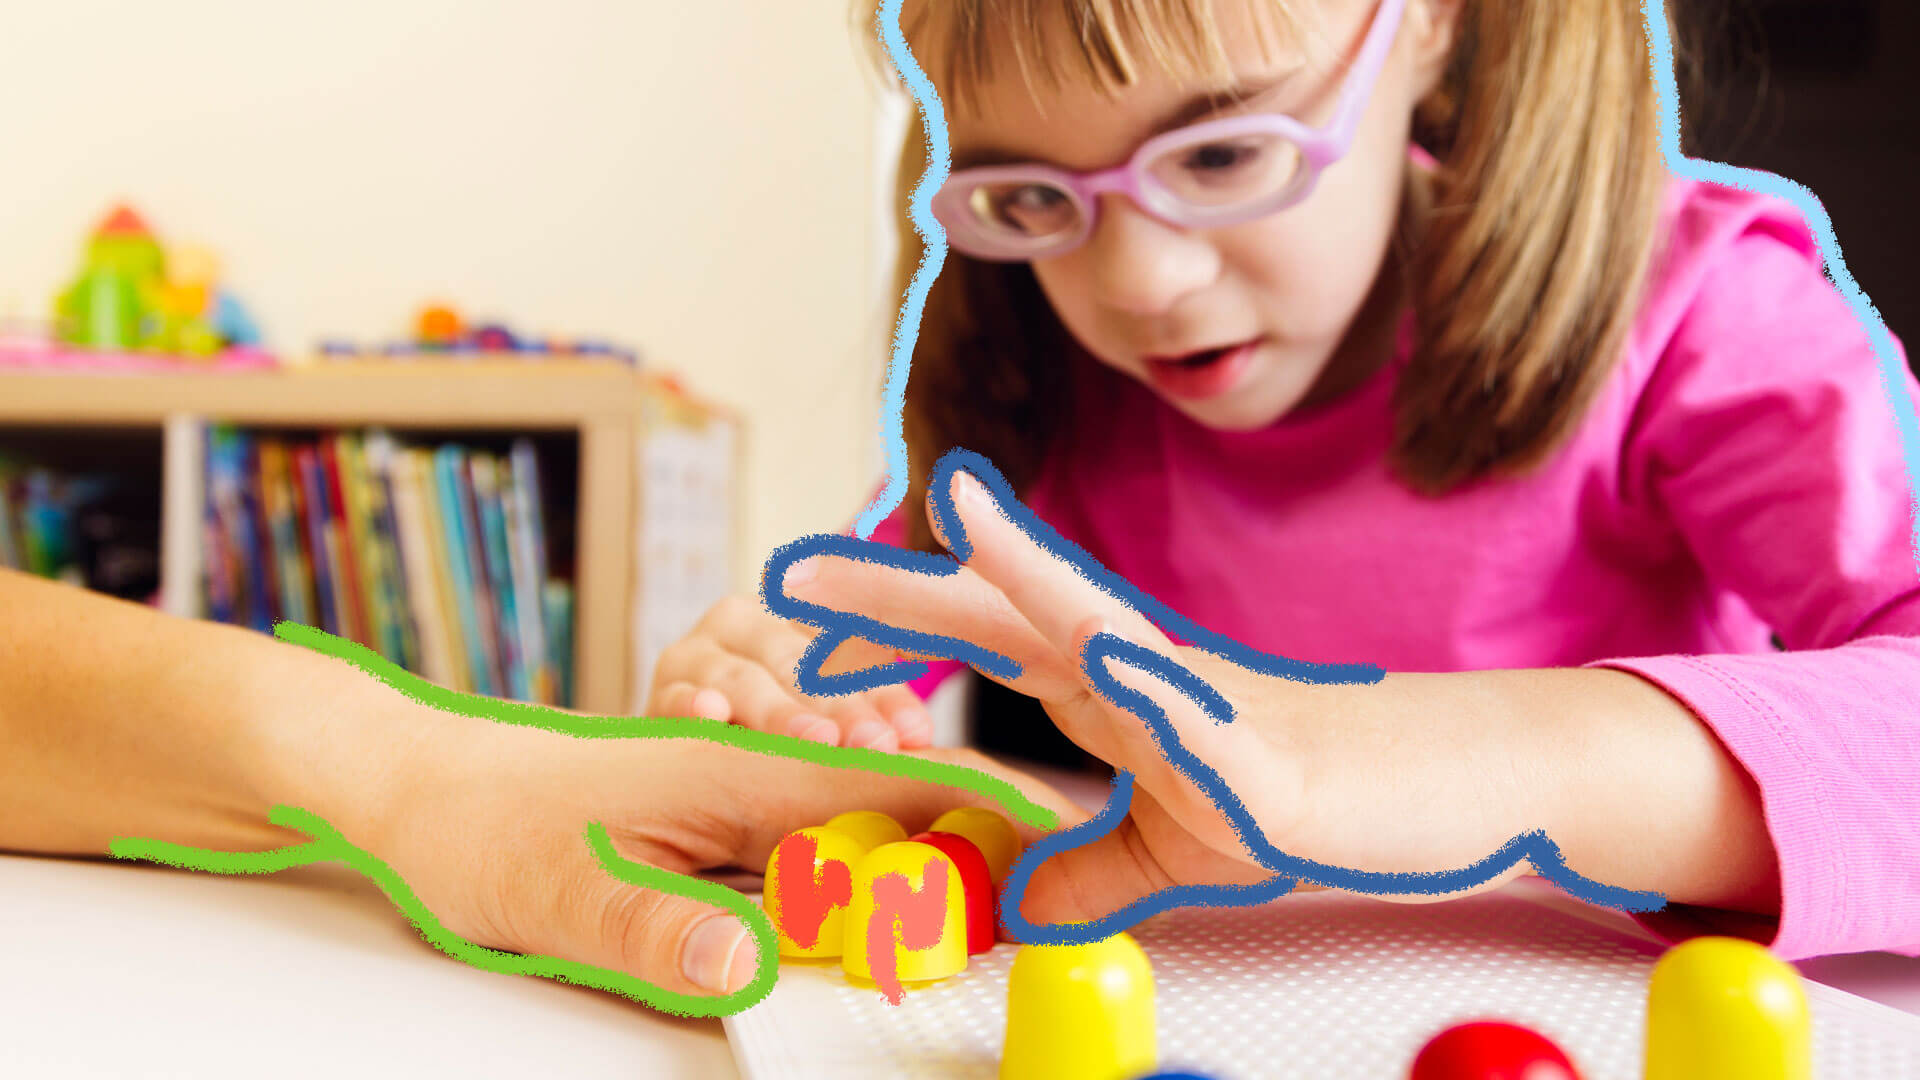 Crianças com deficiência visual: foto de uma menina cega que brinca de explorar texturas e formatos em um jogo de formas geométricas.